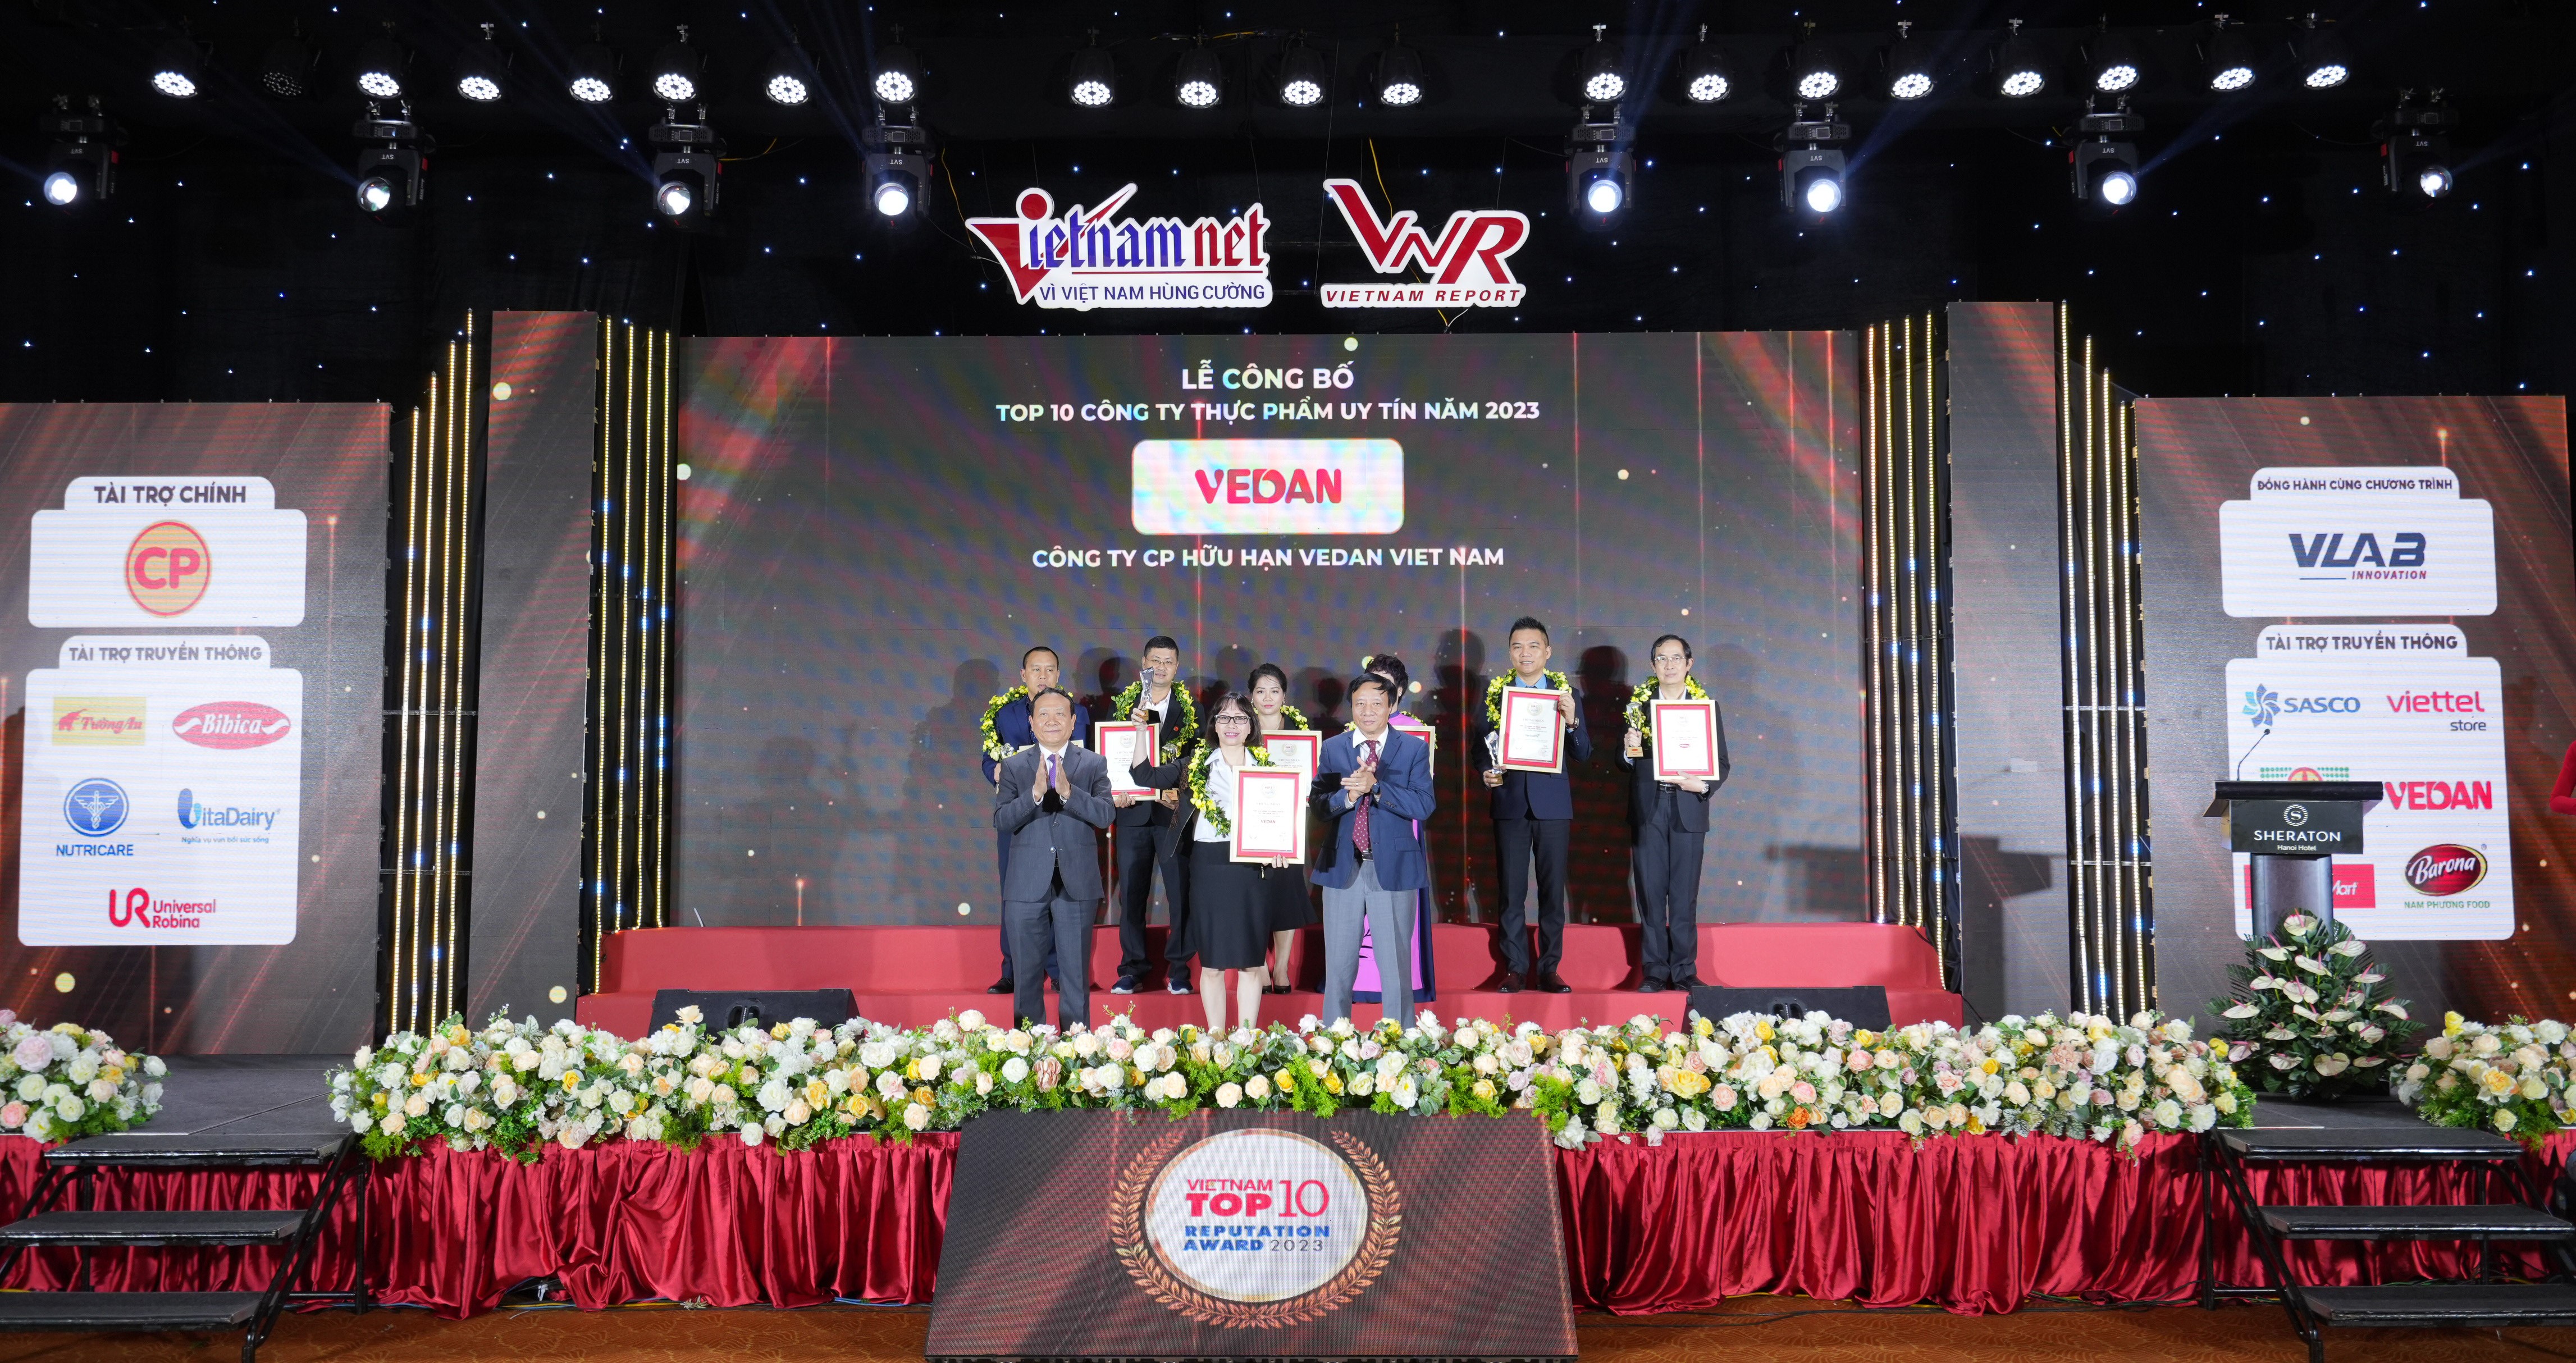 Vedan Việt Nam vinh dự đạt chứng nhận “Top 10 Công ty Thực phẩm uy tín năm 2023”